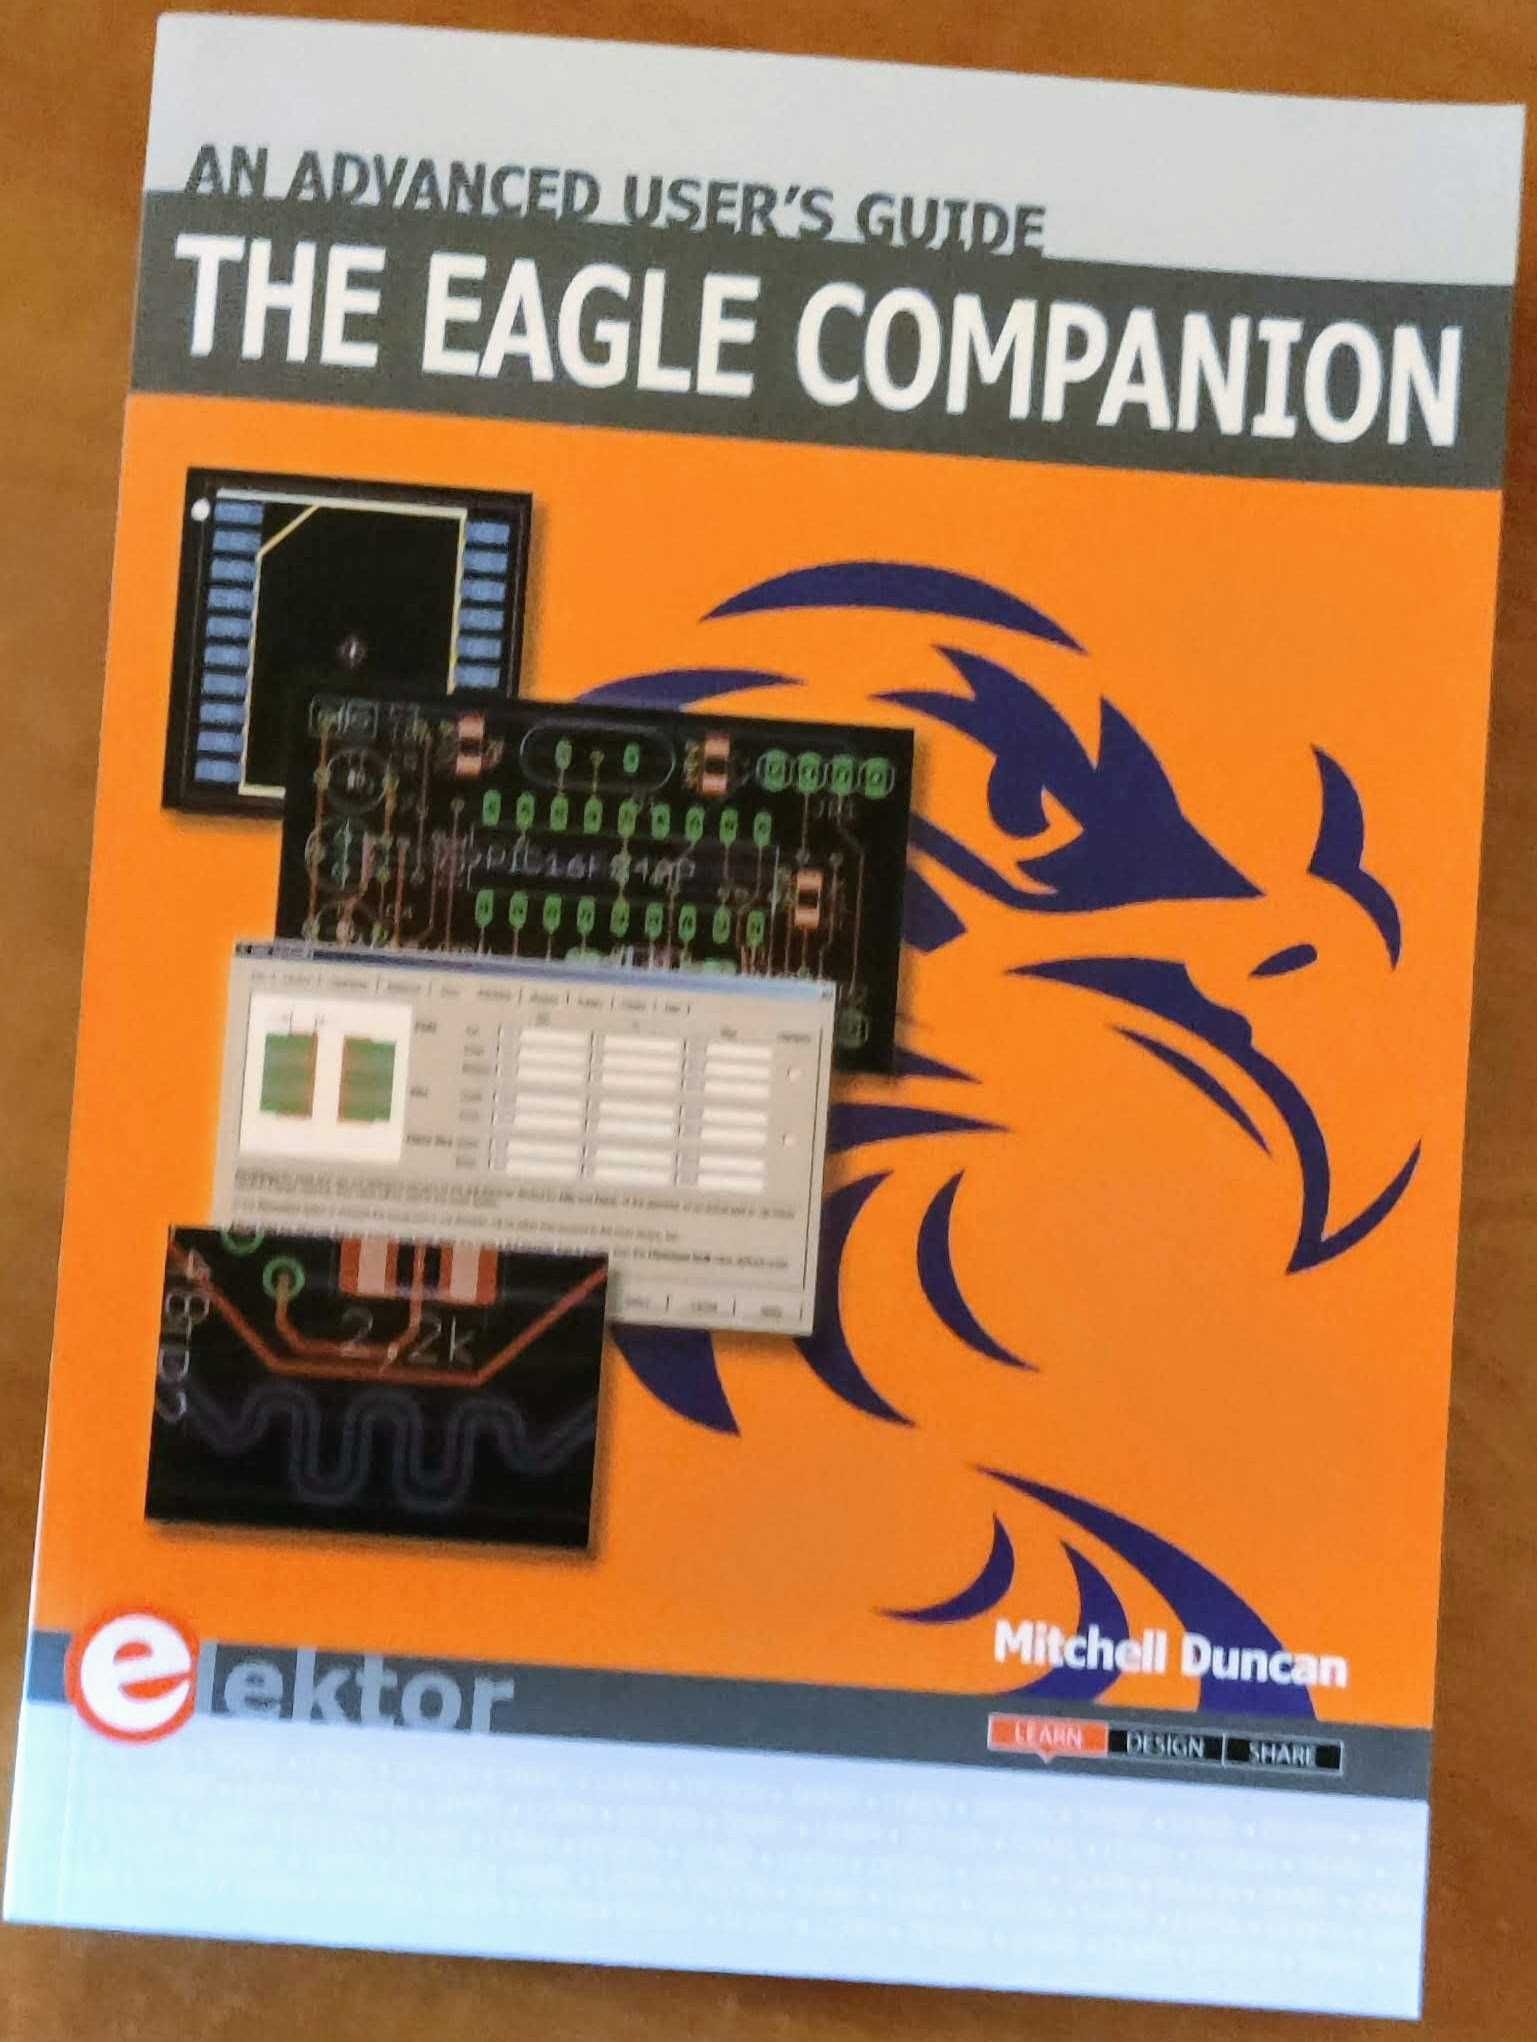 The EAGLE Companion: An Advanced User's Guide (Livro)